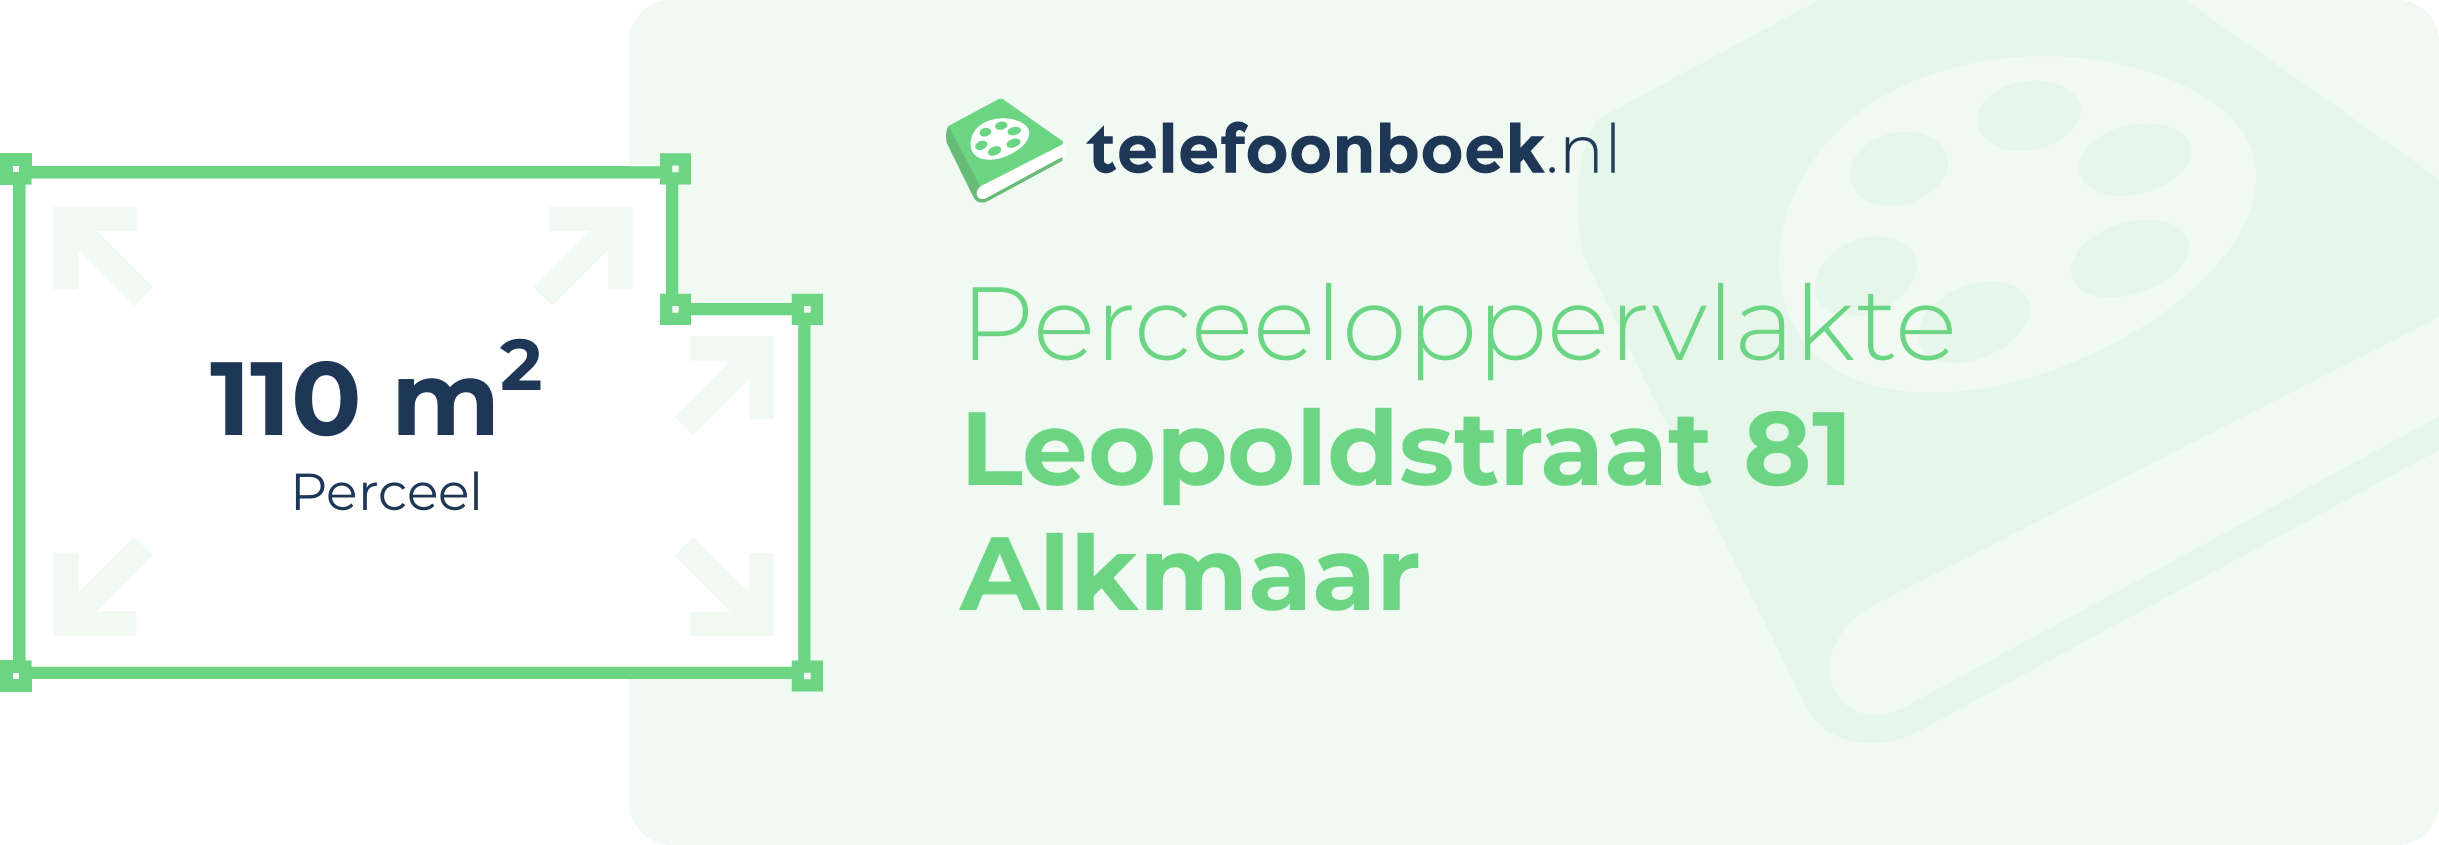 Perceeloppervlakte Leopoldstraat 81 Alkmaar